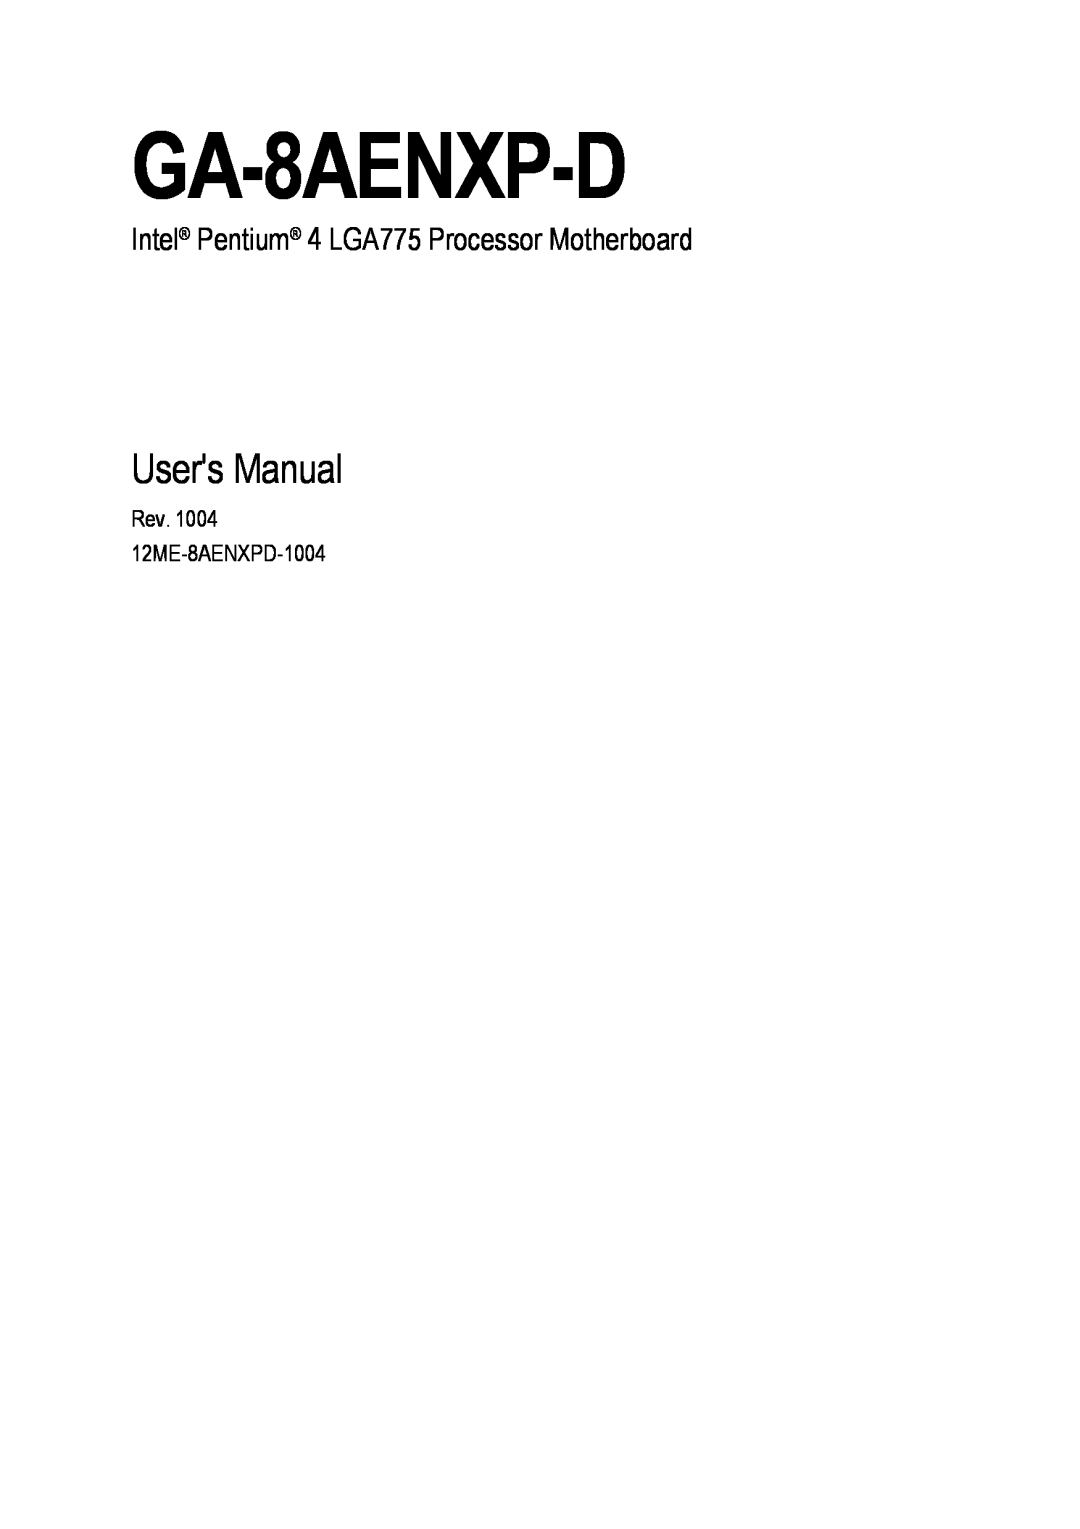 Gigabyte GA-8AENXP-D user manual Users Manual, Intel Pentium 4 LGA775 Processor Motherboard 